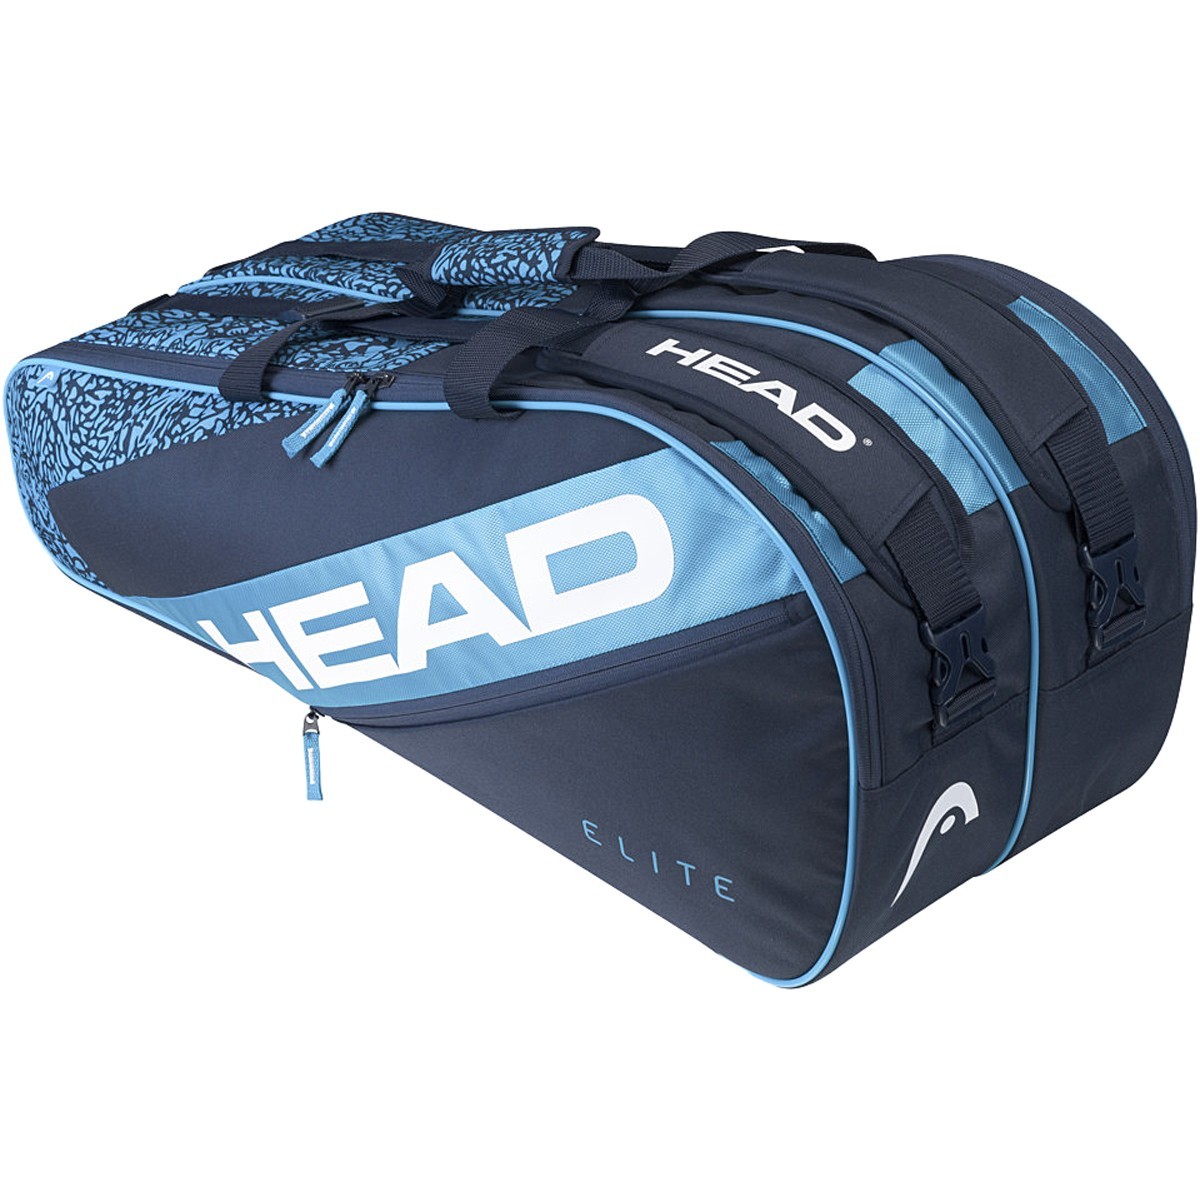 Теннисная сумка Head Elite 9R blue/navy